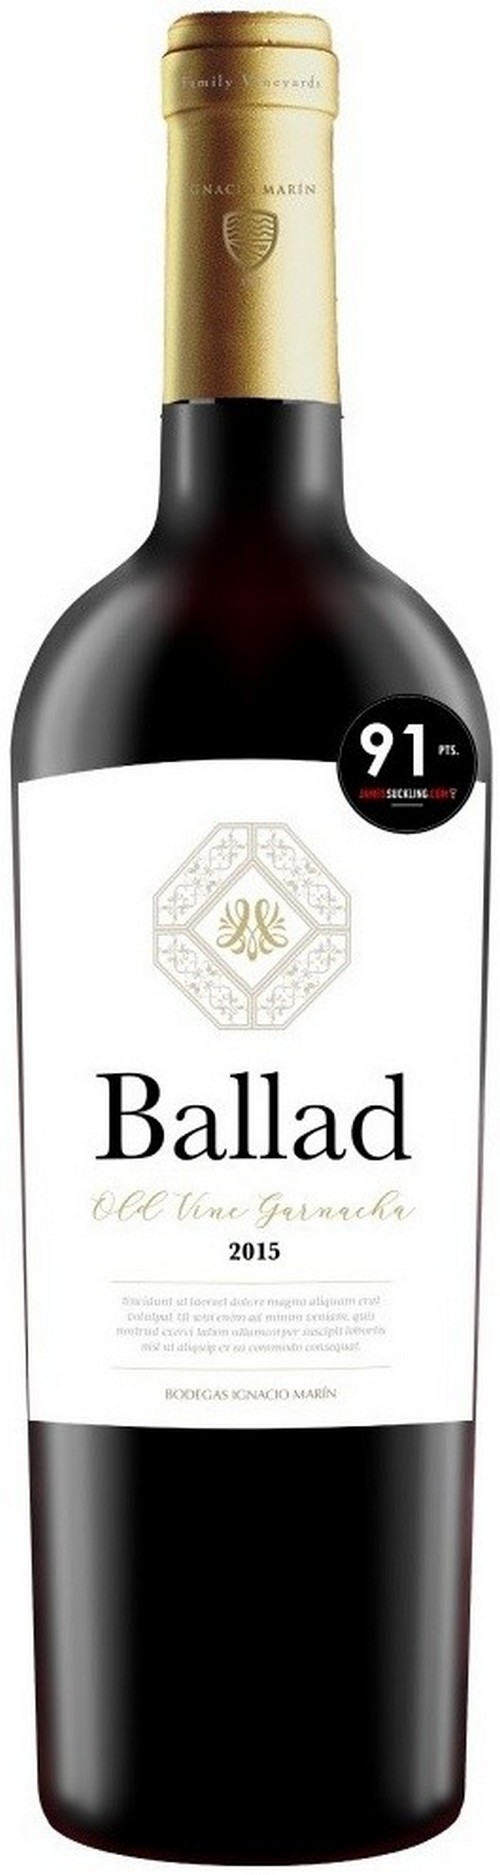 ballad-old-vine-garnacha-2020